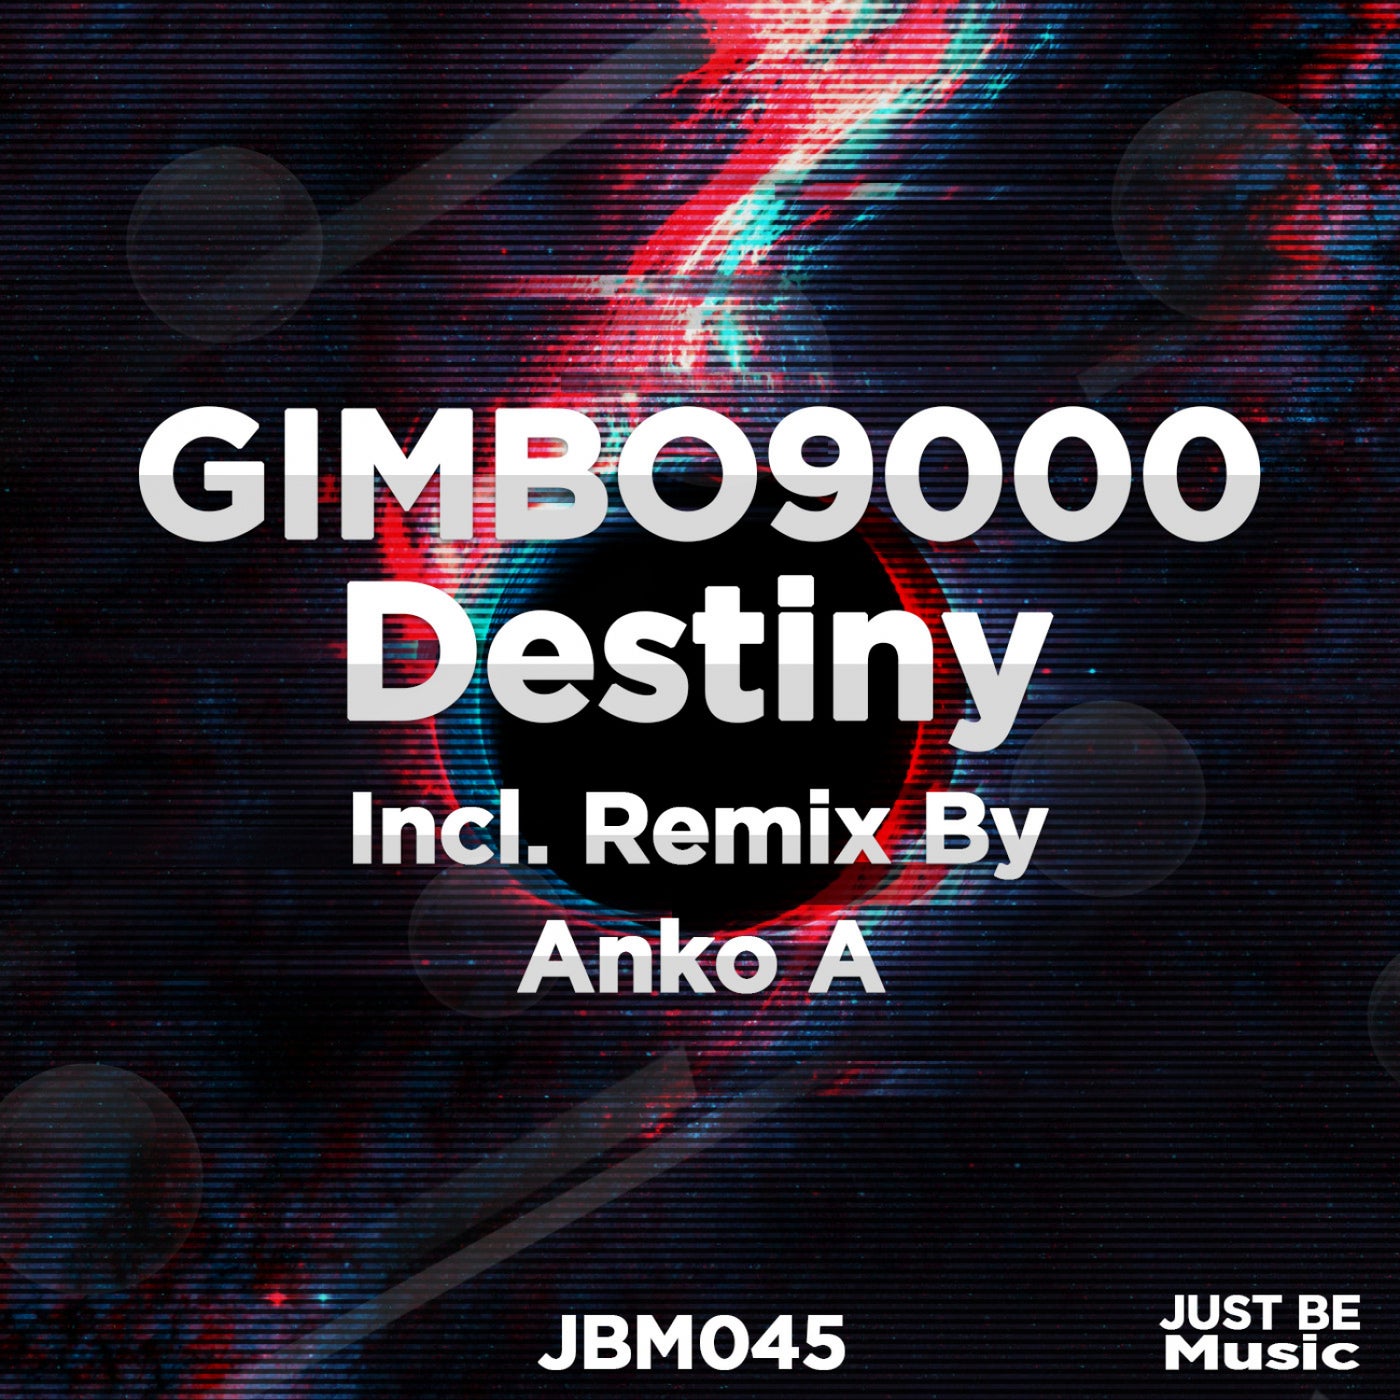 GIMBO9000 - Hot! [KU037]